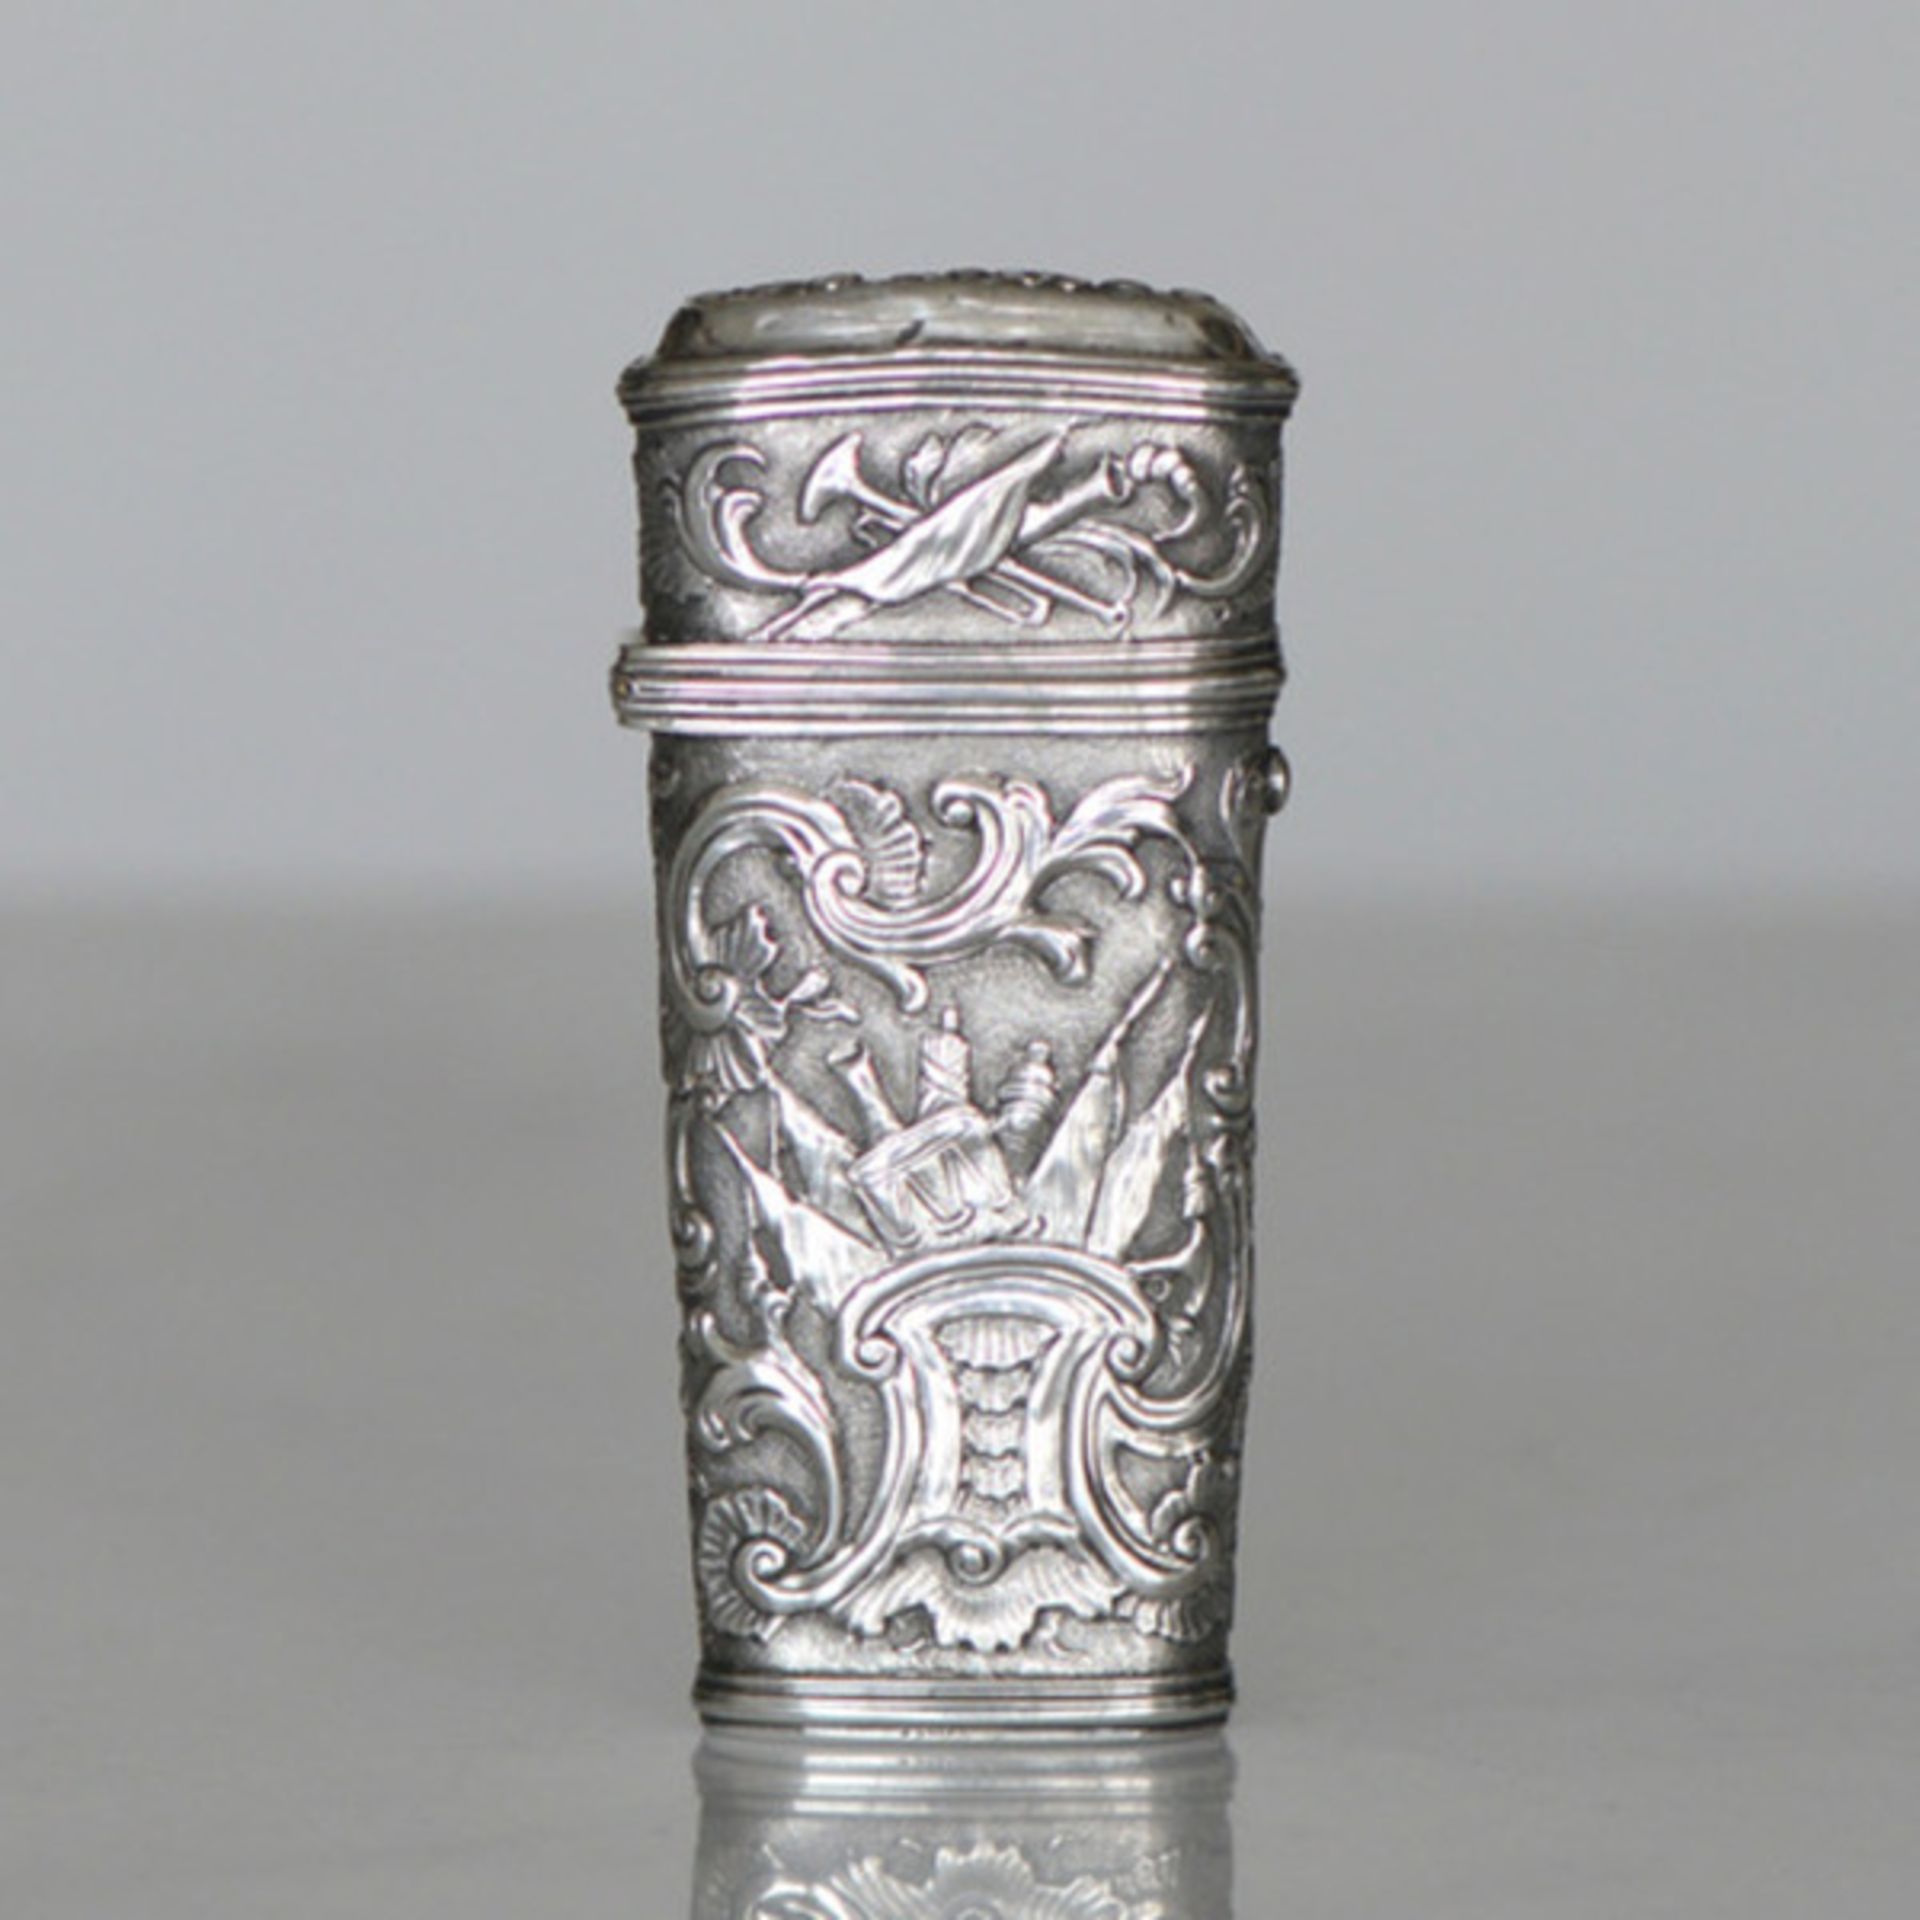 (Zilver) Zilver en divers, Lodewijk de 15e reisnécessaire doos, rond 1800 Zilver en divers, Lo - Image 12 of 19